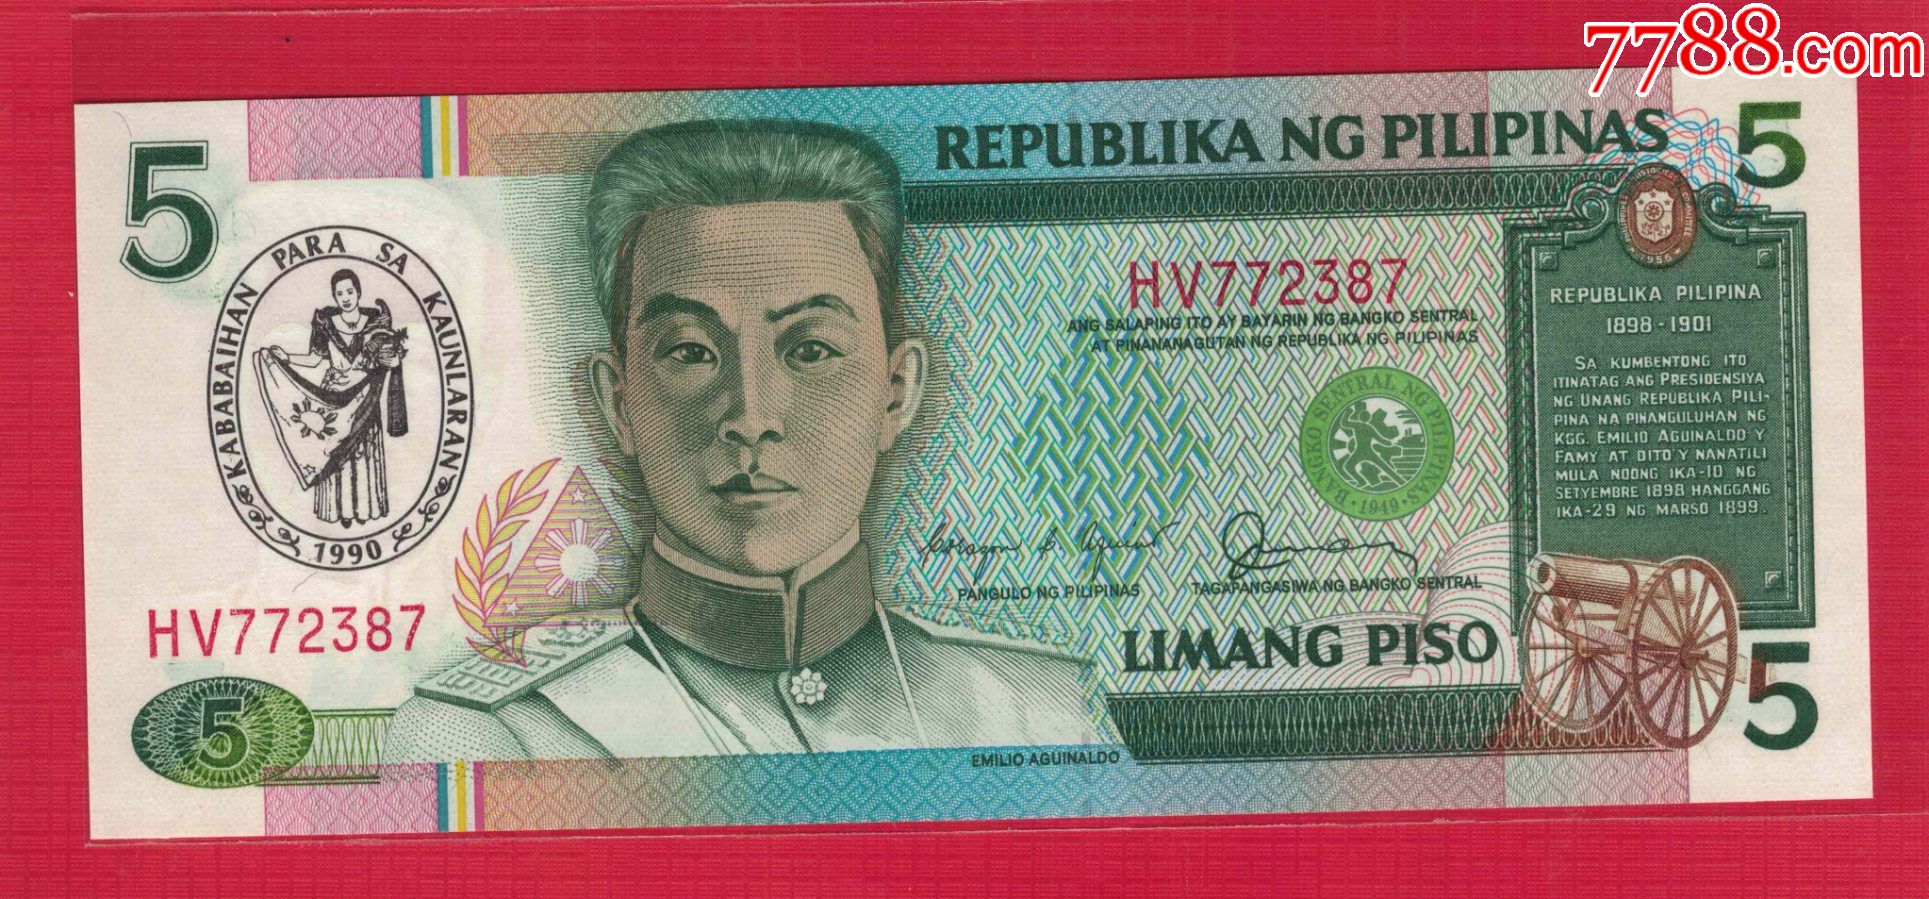 菲律宾的钱币图案-图库-五毛网